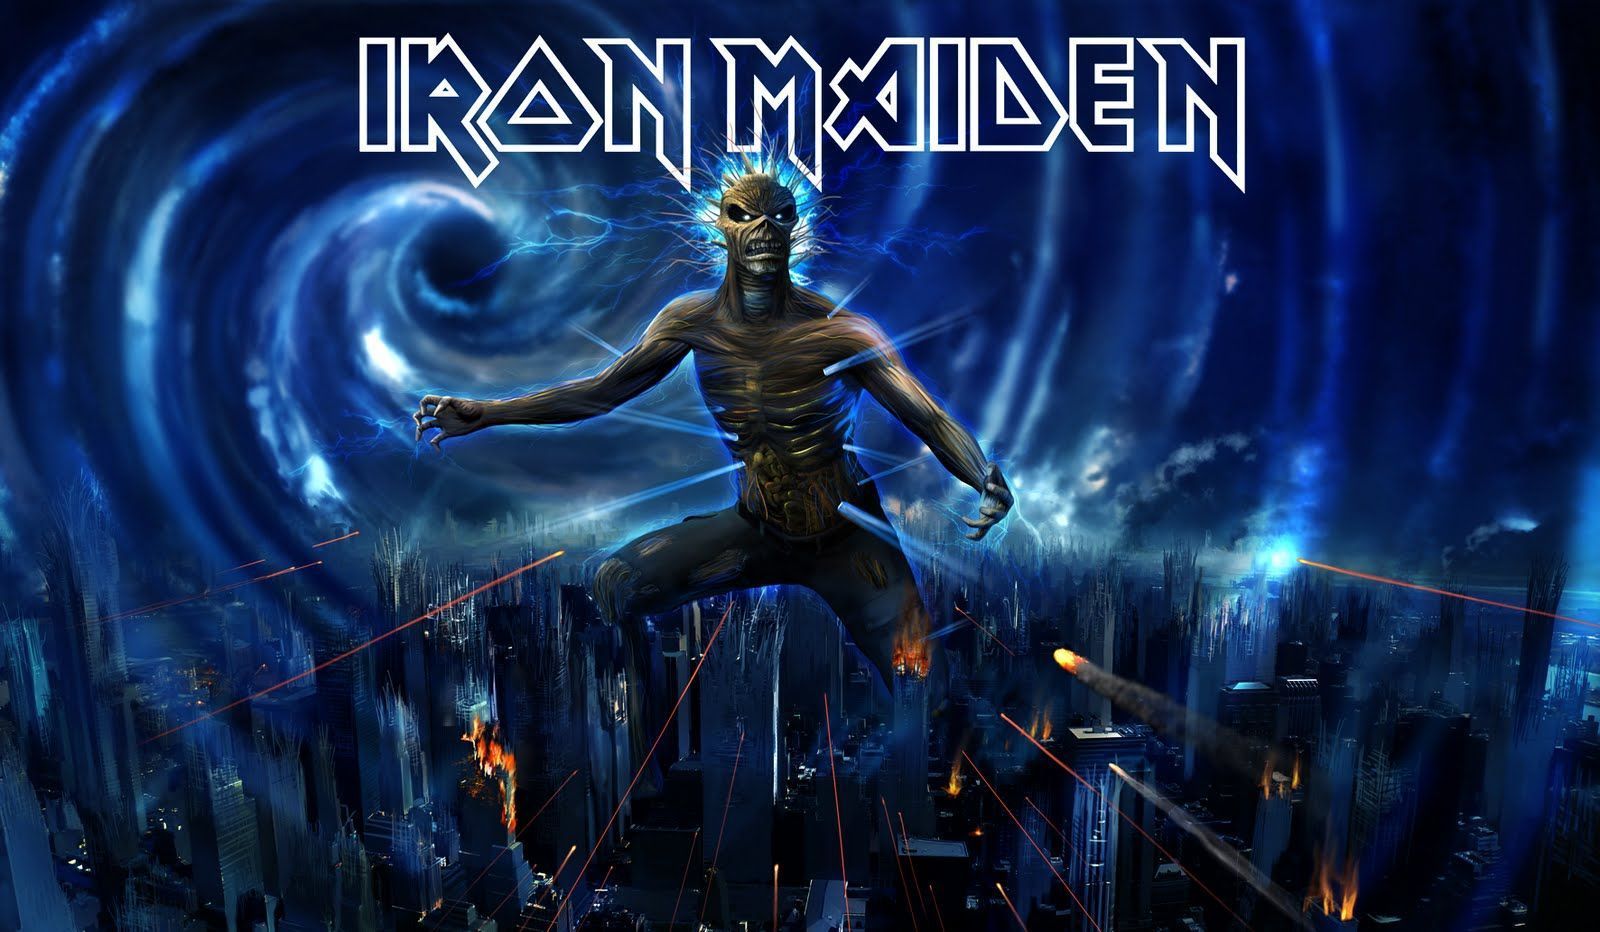 Iron Maiden 電腦桌布, 桌面背景| 1600x932 | ID:381202